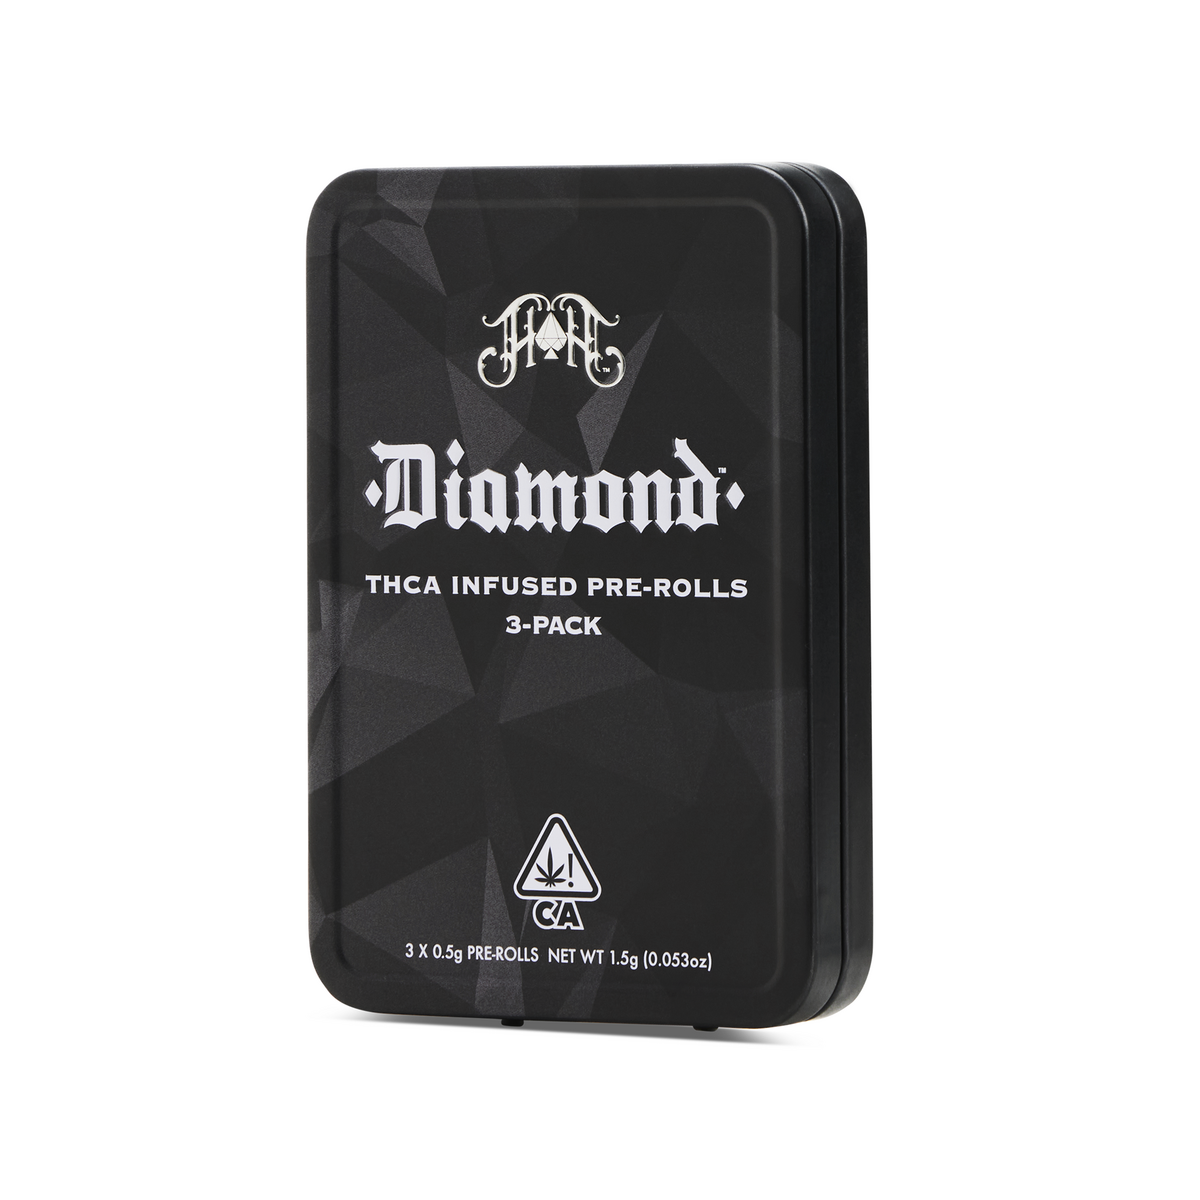 Figueroa OG | Diamond THCA-Infused Pre-Rolls - 1.5G Three-Pack